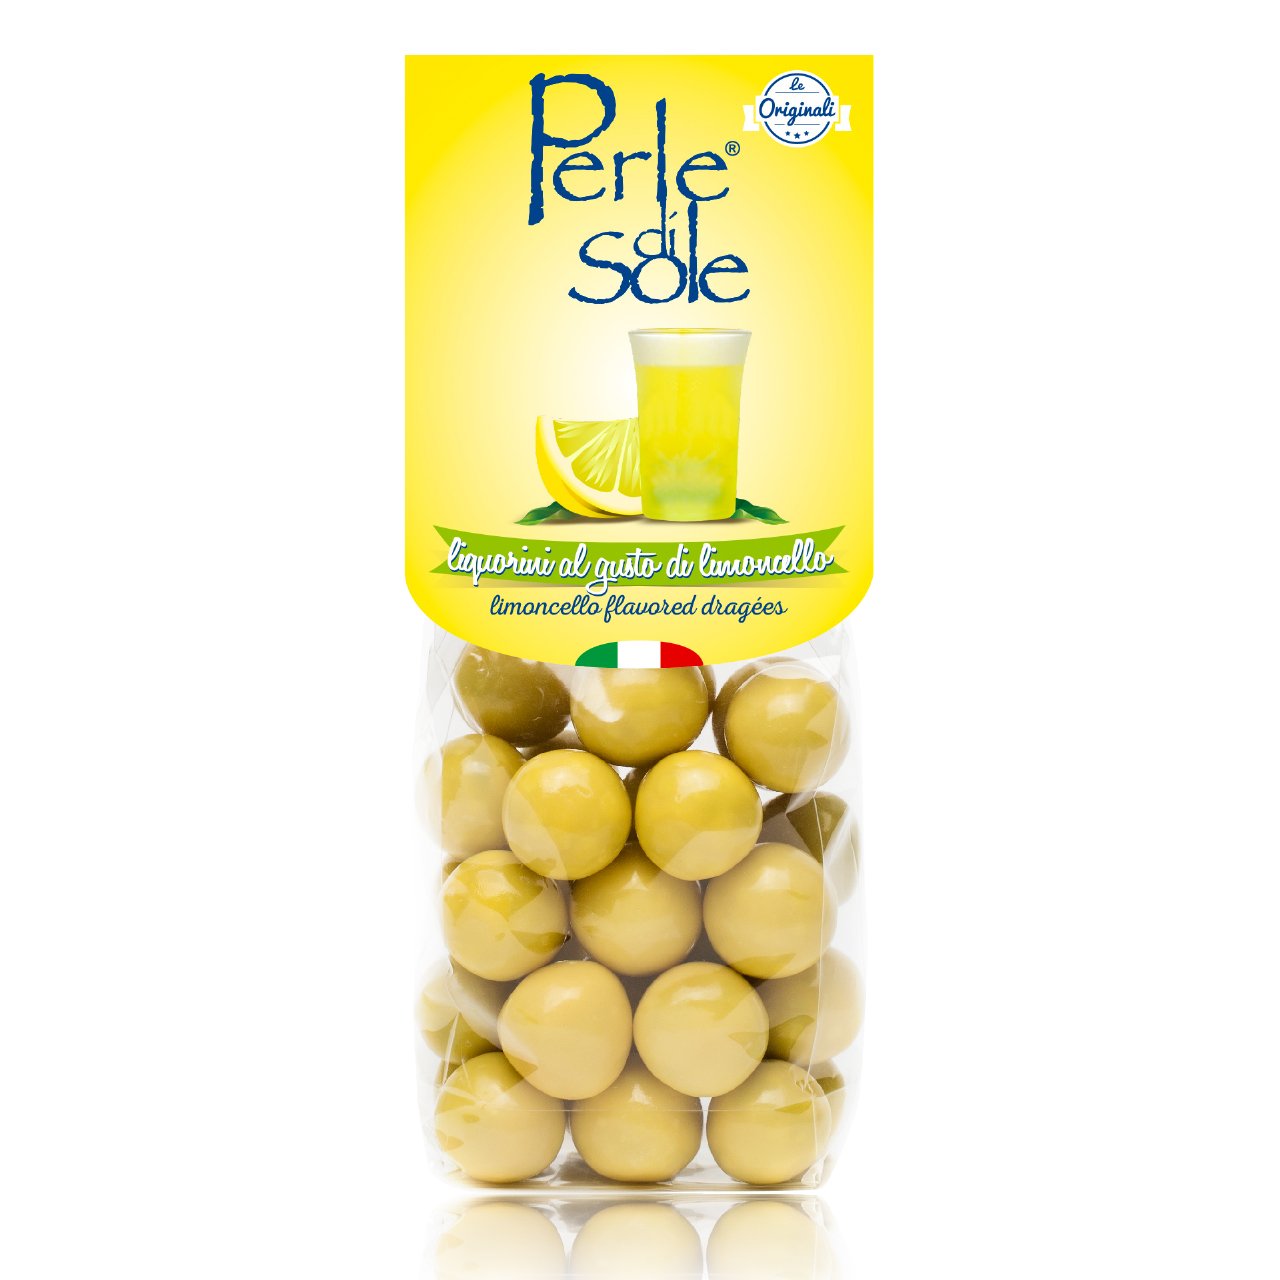 Dragées Almond Flavour of Lemon - Perle di Sole - Offer 6 Piece